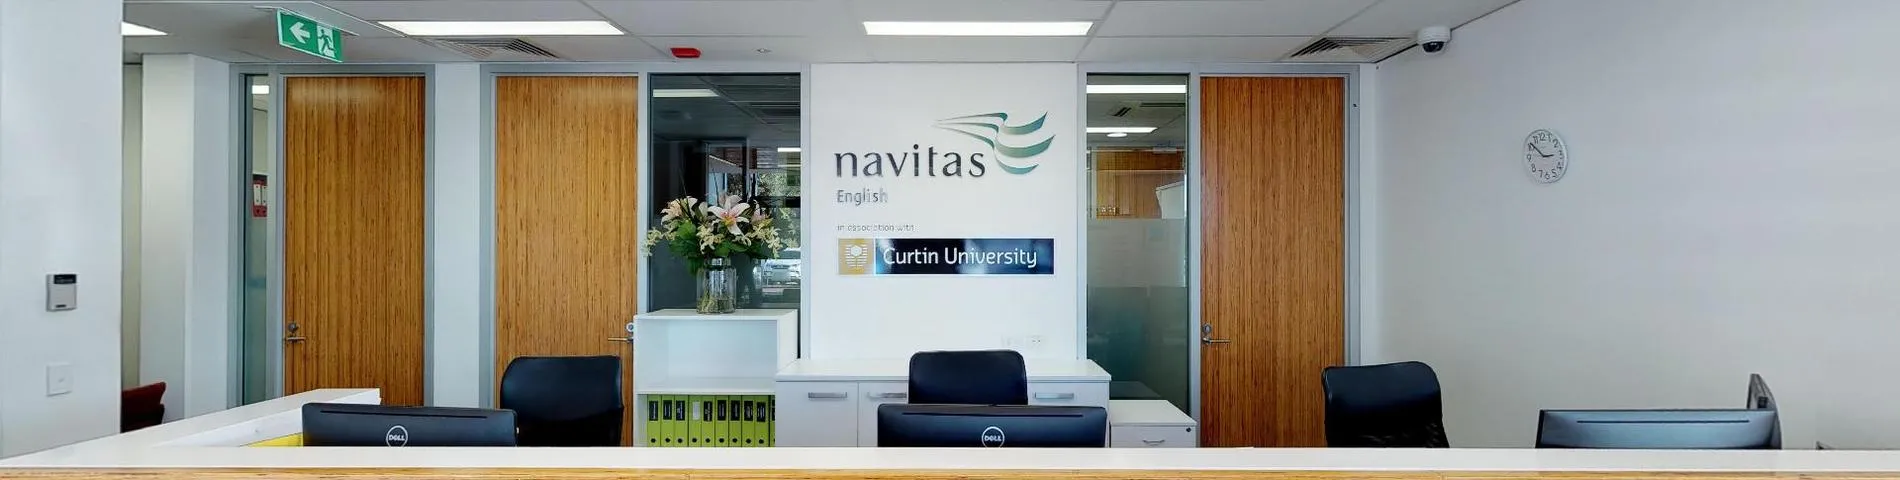 Navitas English画像1